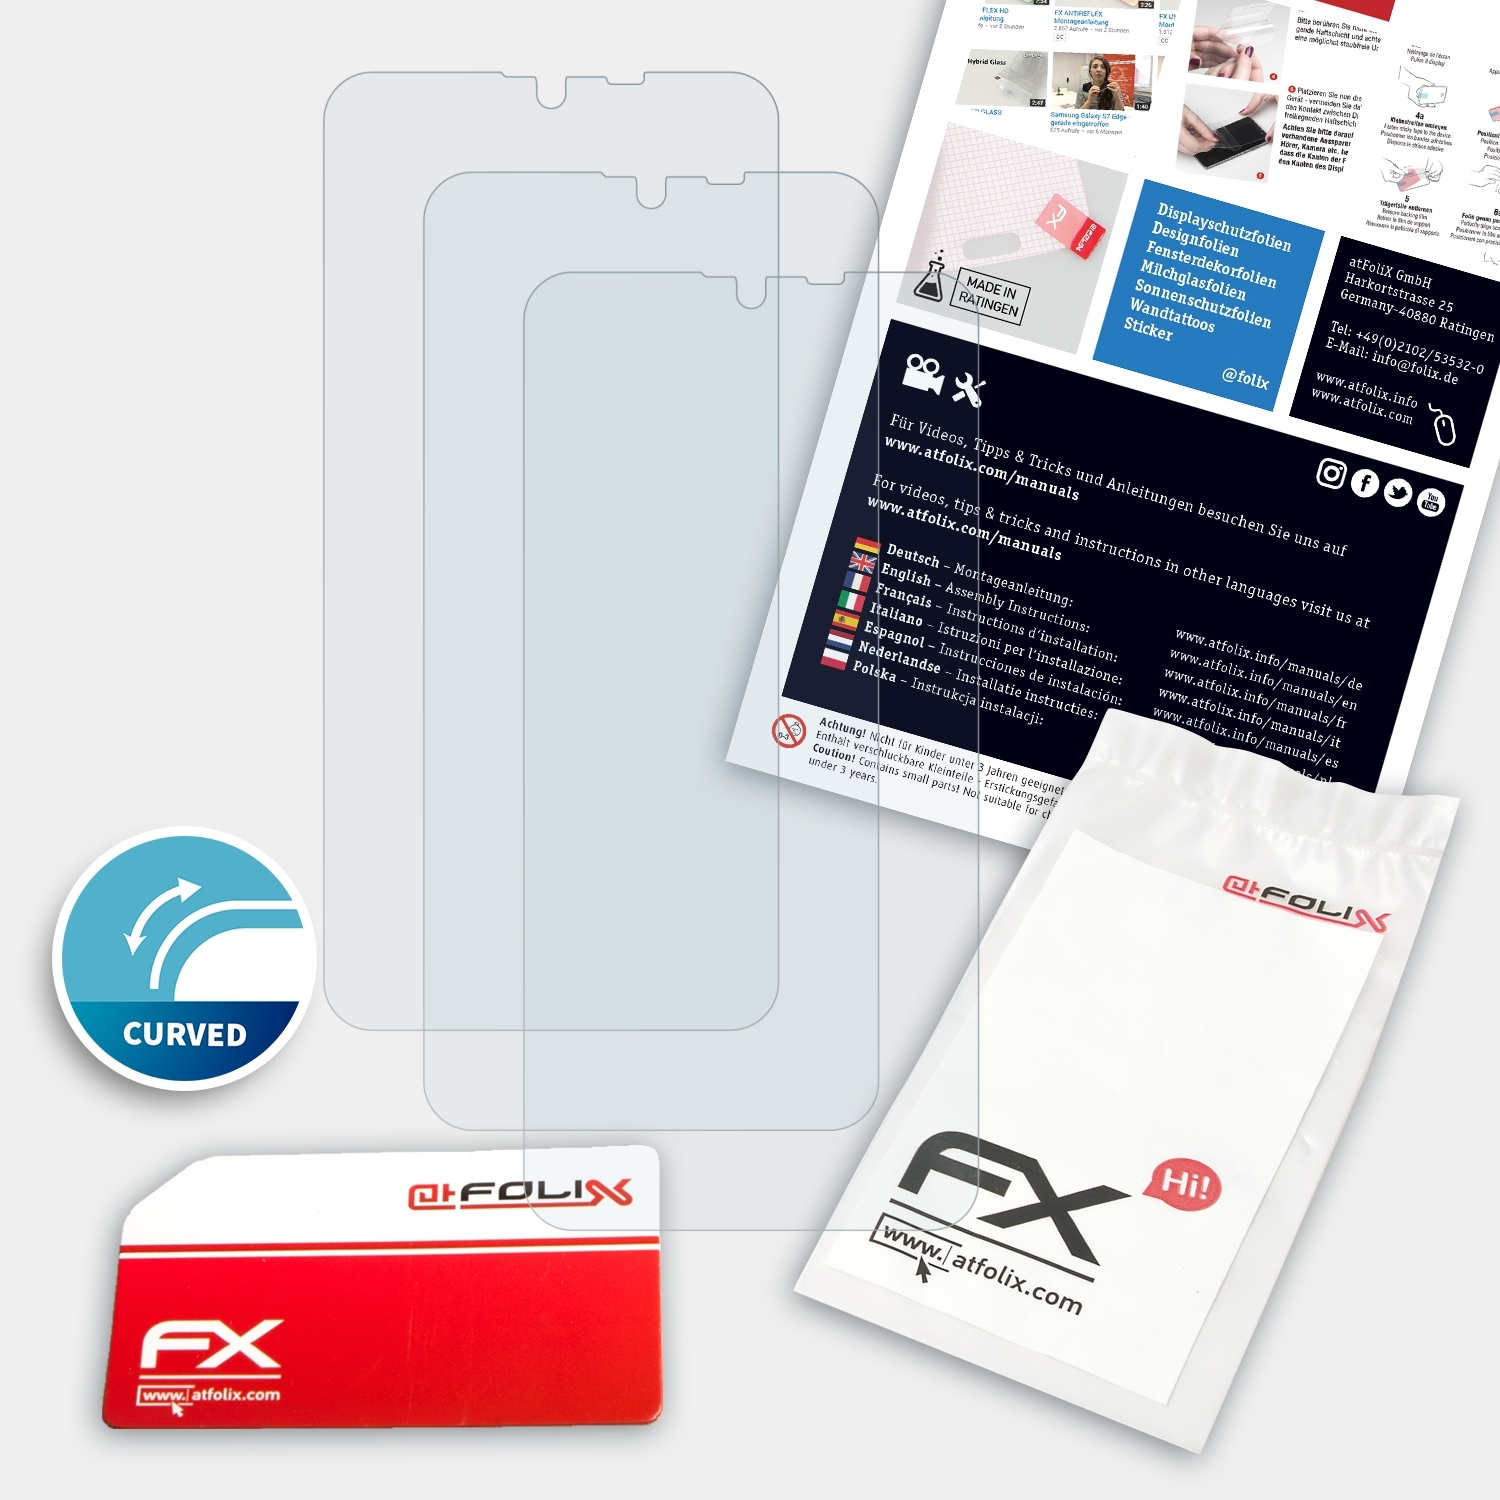 ATFOLIX 3x Displayschutz(für Beafon FX-ActiFleX M6s)